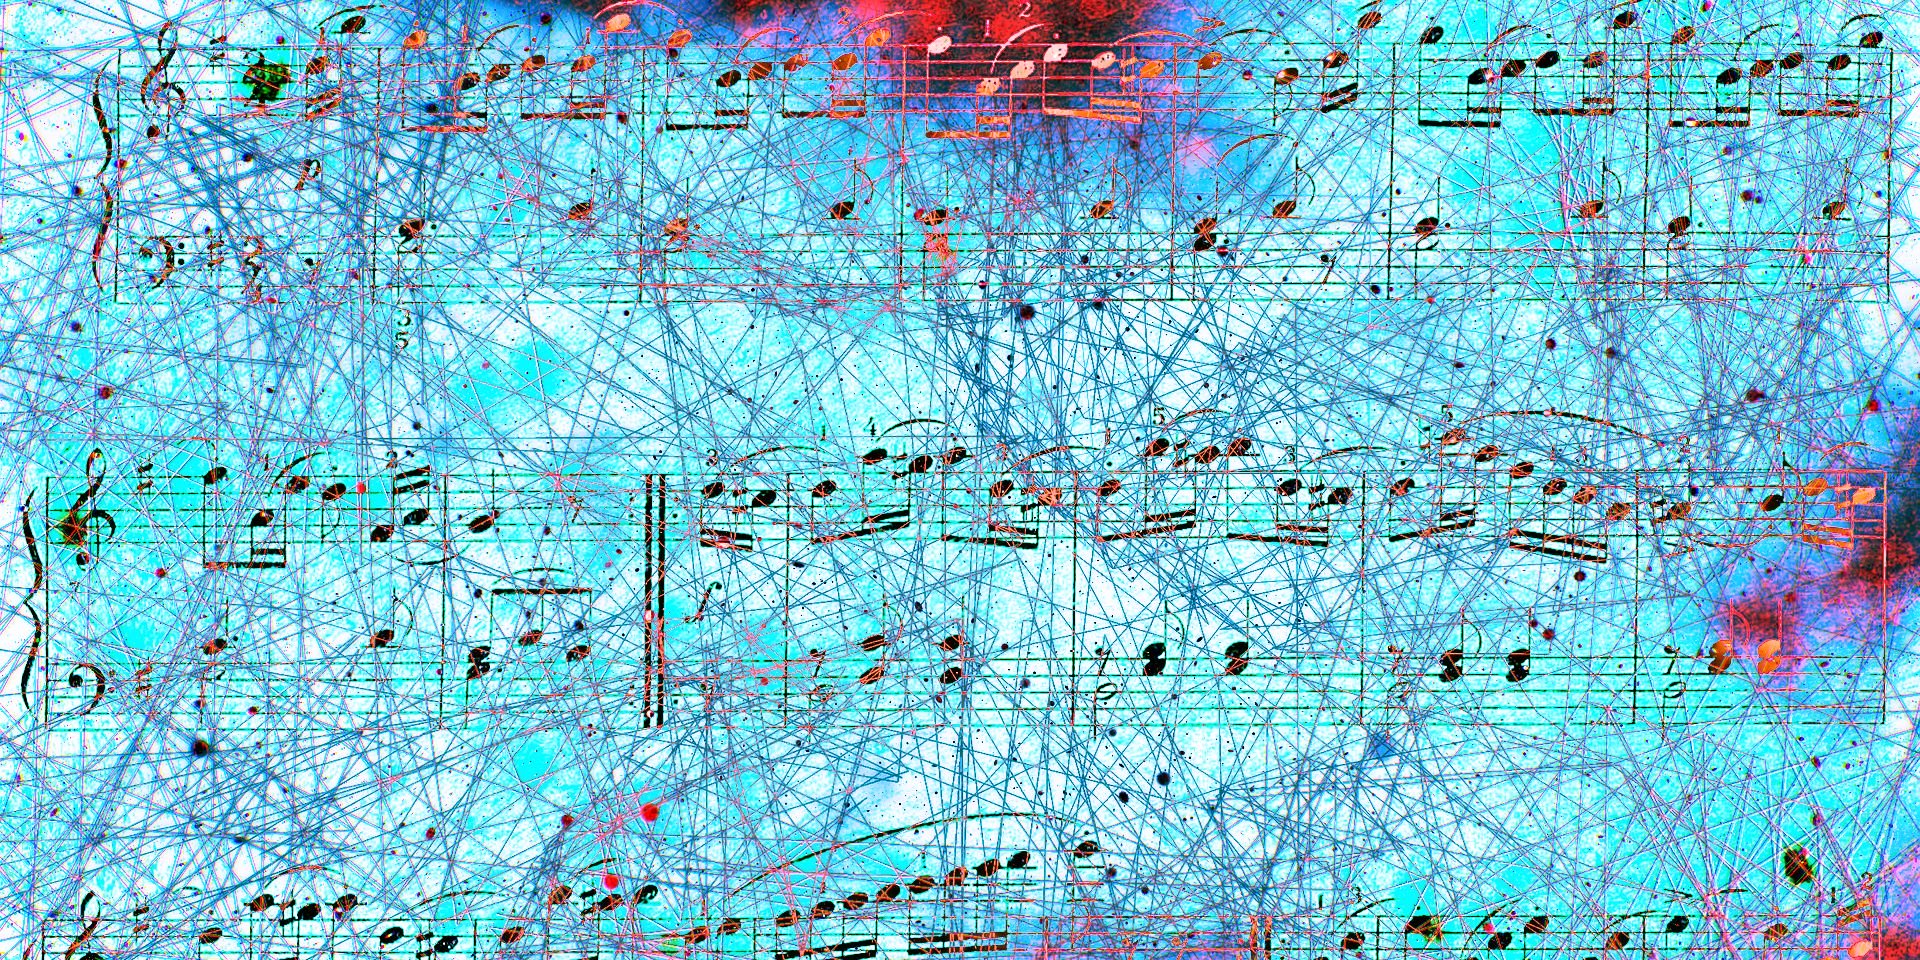 Neuralink de Elon Musk puede transmitir música a su cerebro Reclamo explicado